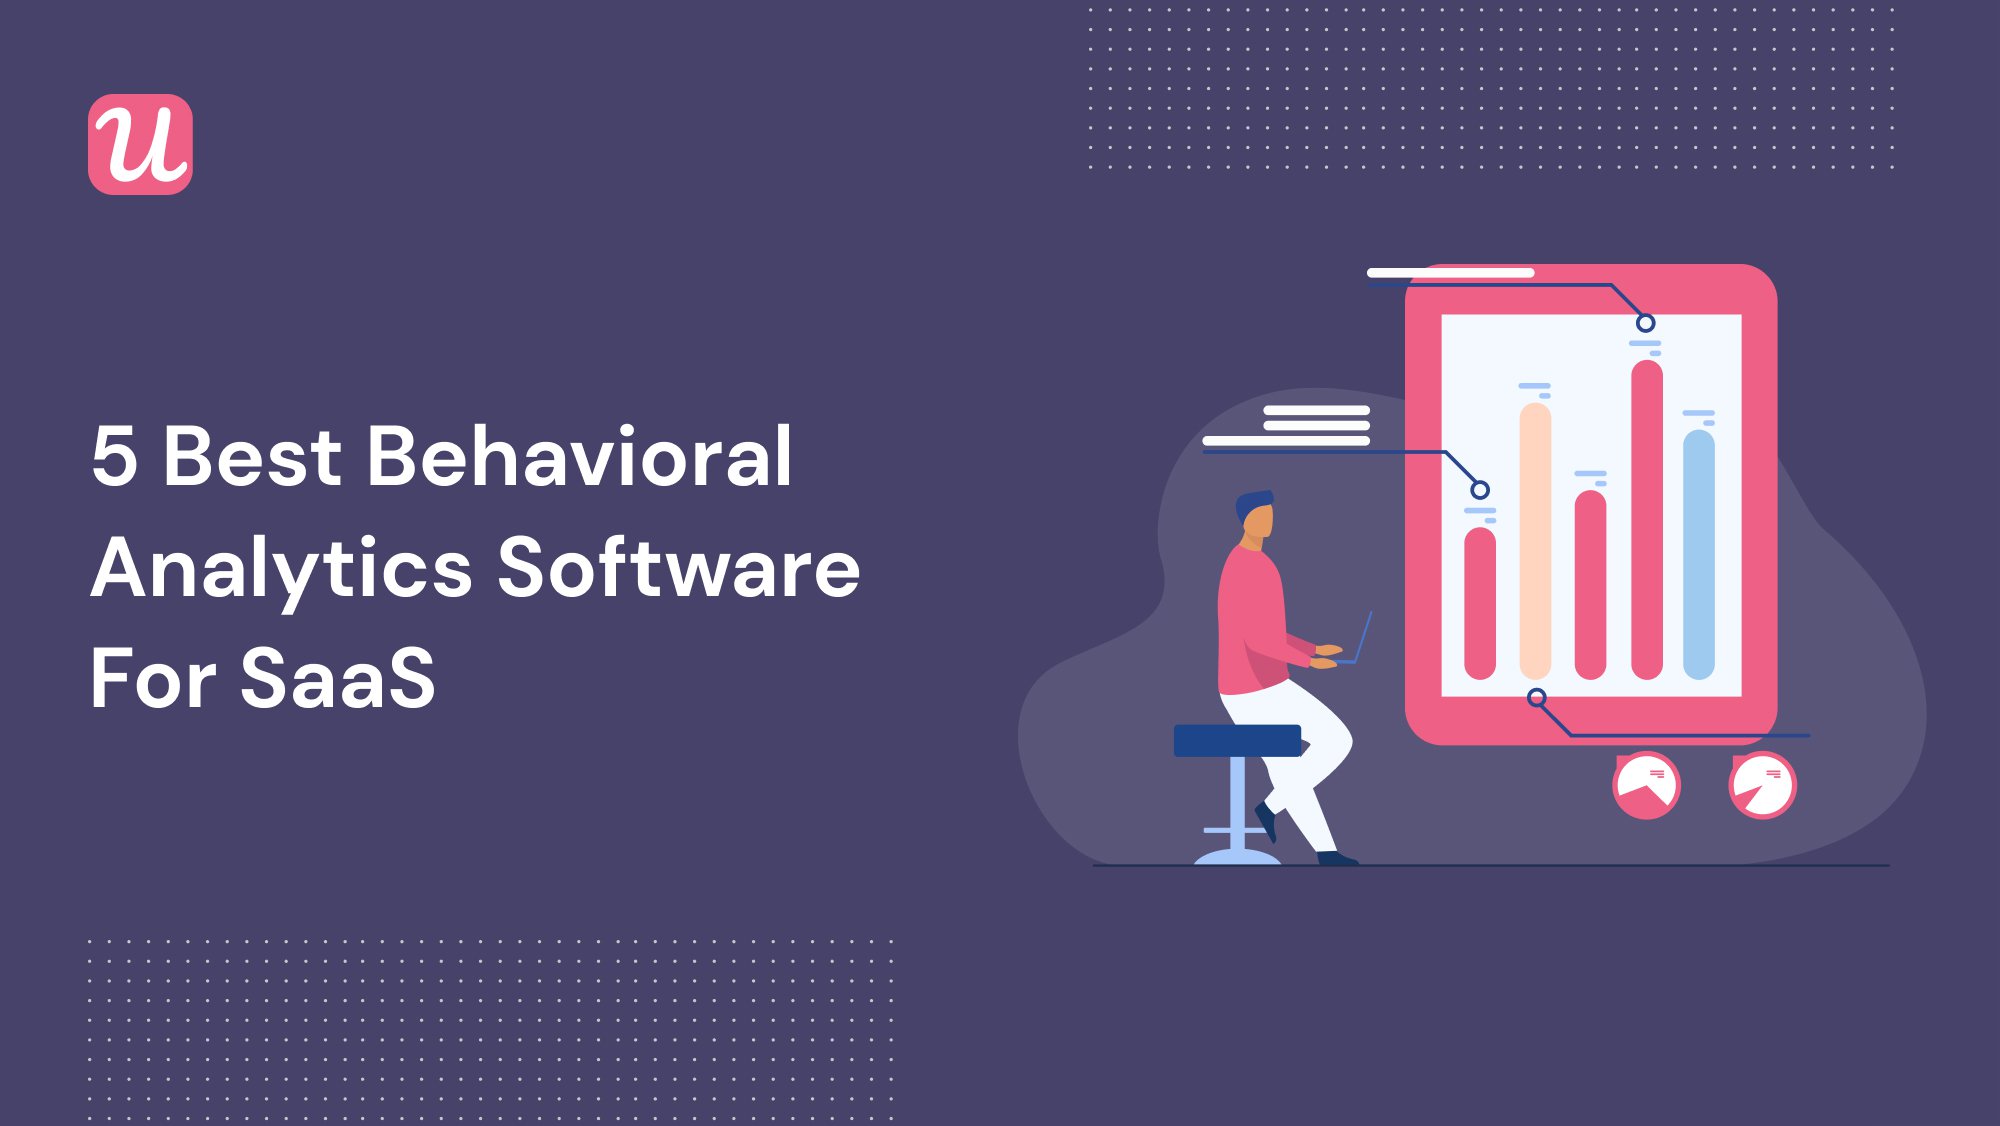 5 Best Behavioral Analytics Software for SaaS